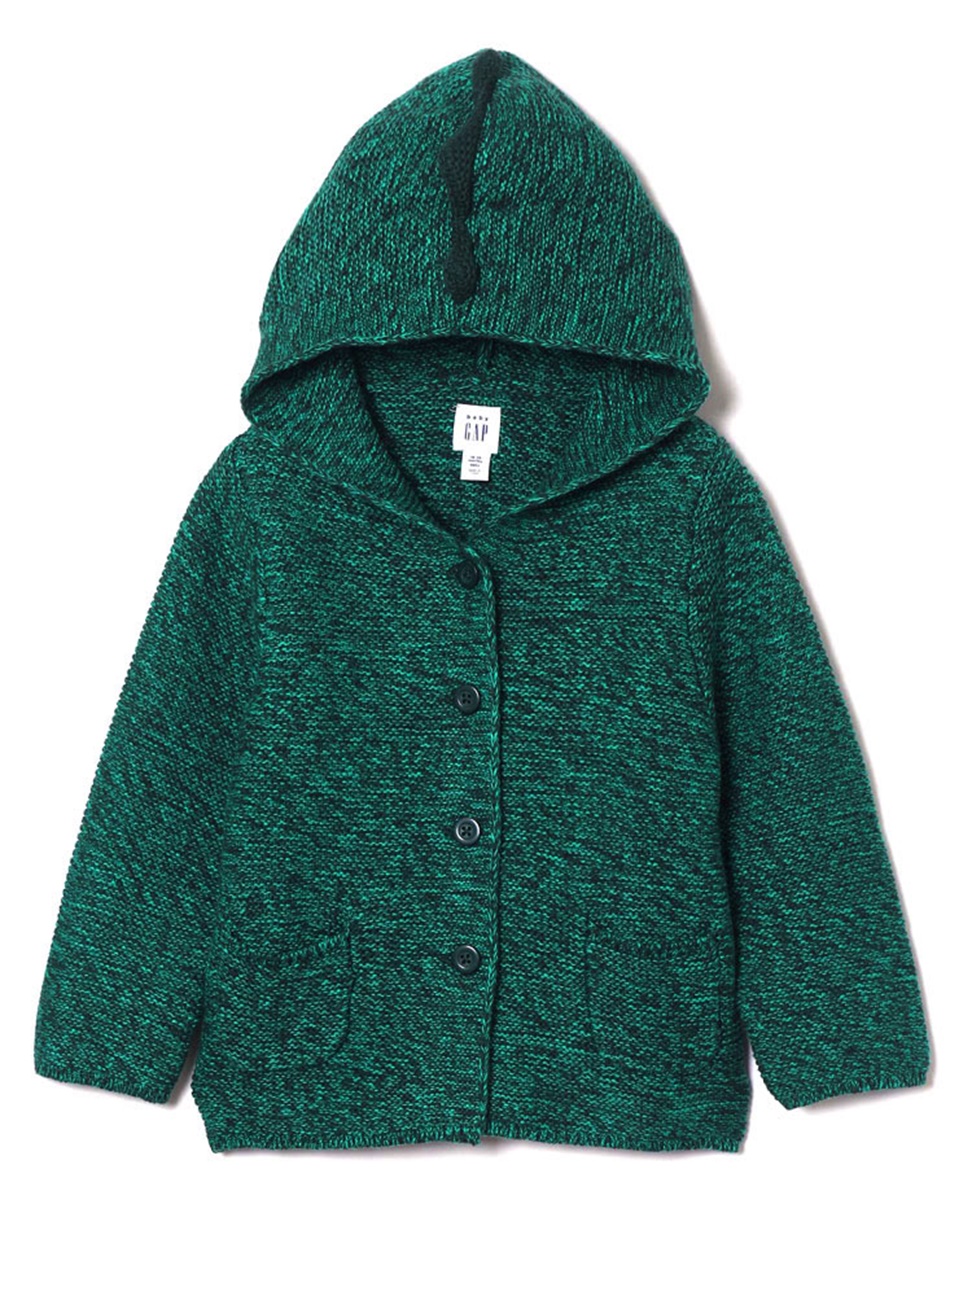 嬰兒裝|純棉恐龍印花平織連帽針織衫-墨綠色